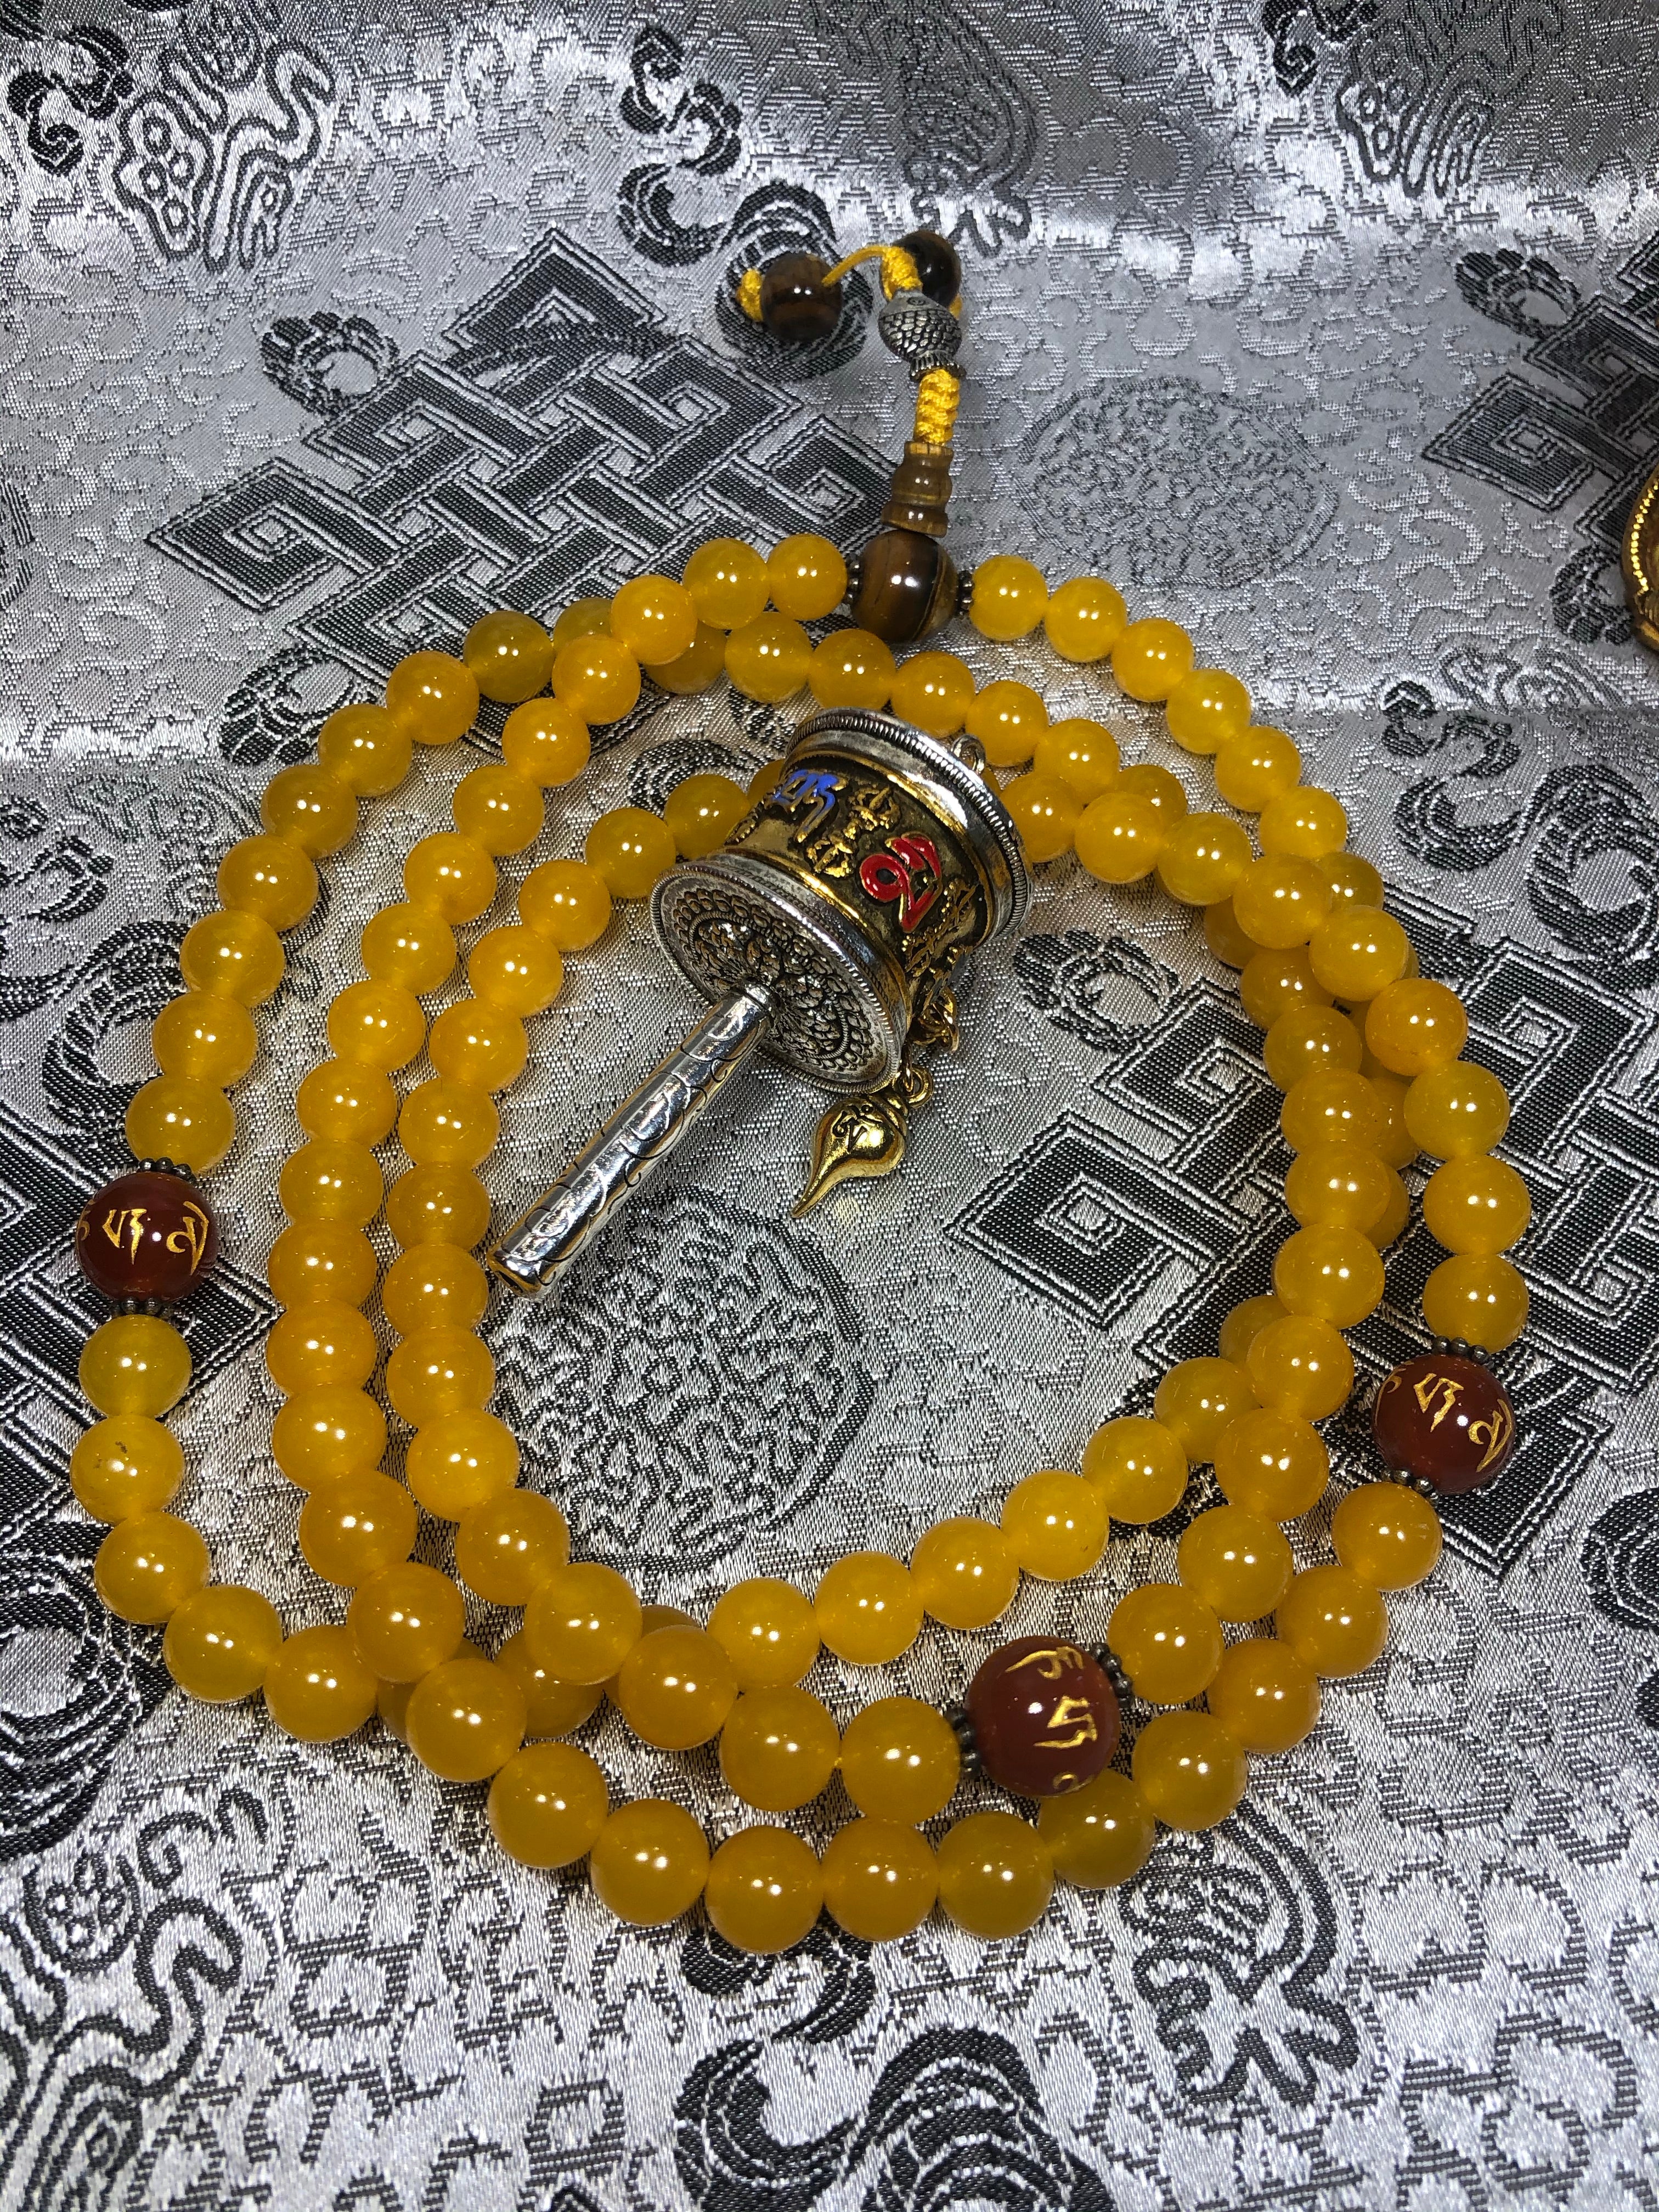 Yellow Zed Mala / Prayer Beads ( TGMA 39 )